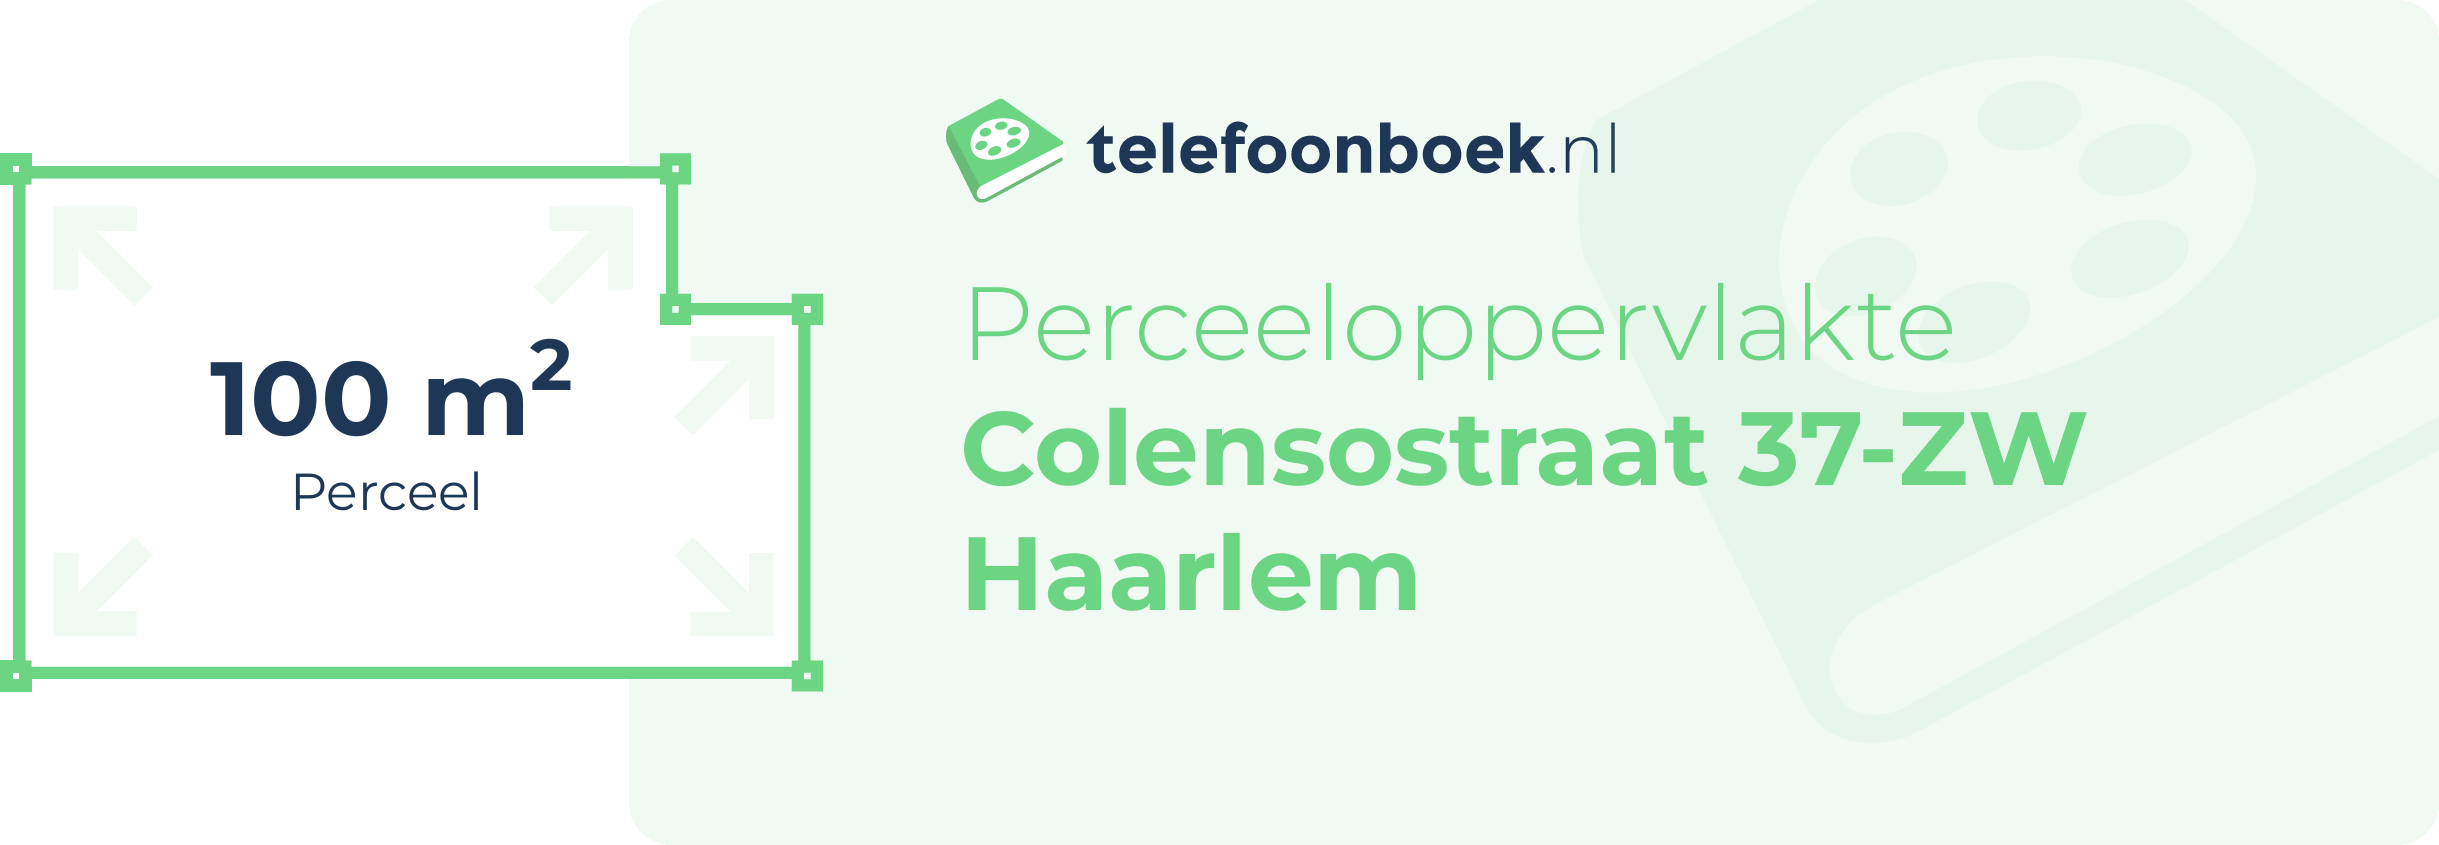 Perceeloppervlakte Colensostraat 37-ZW Haarlem